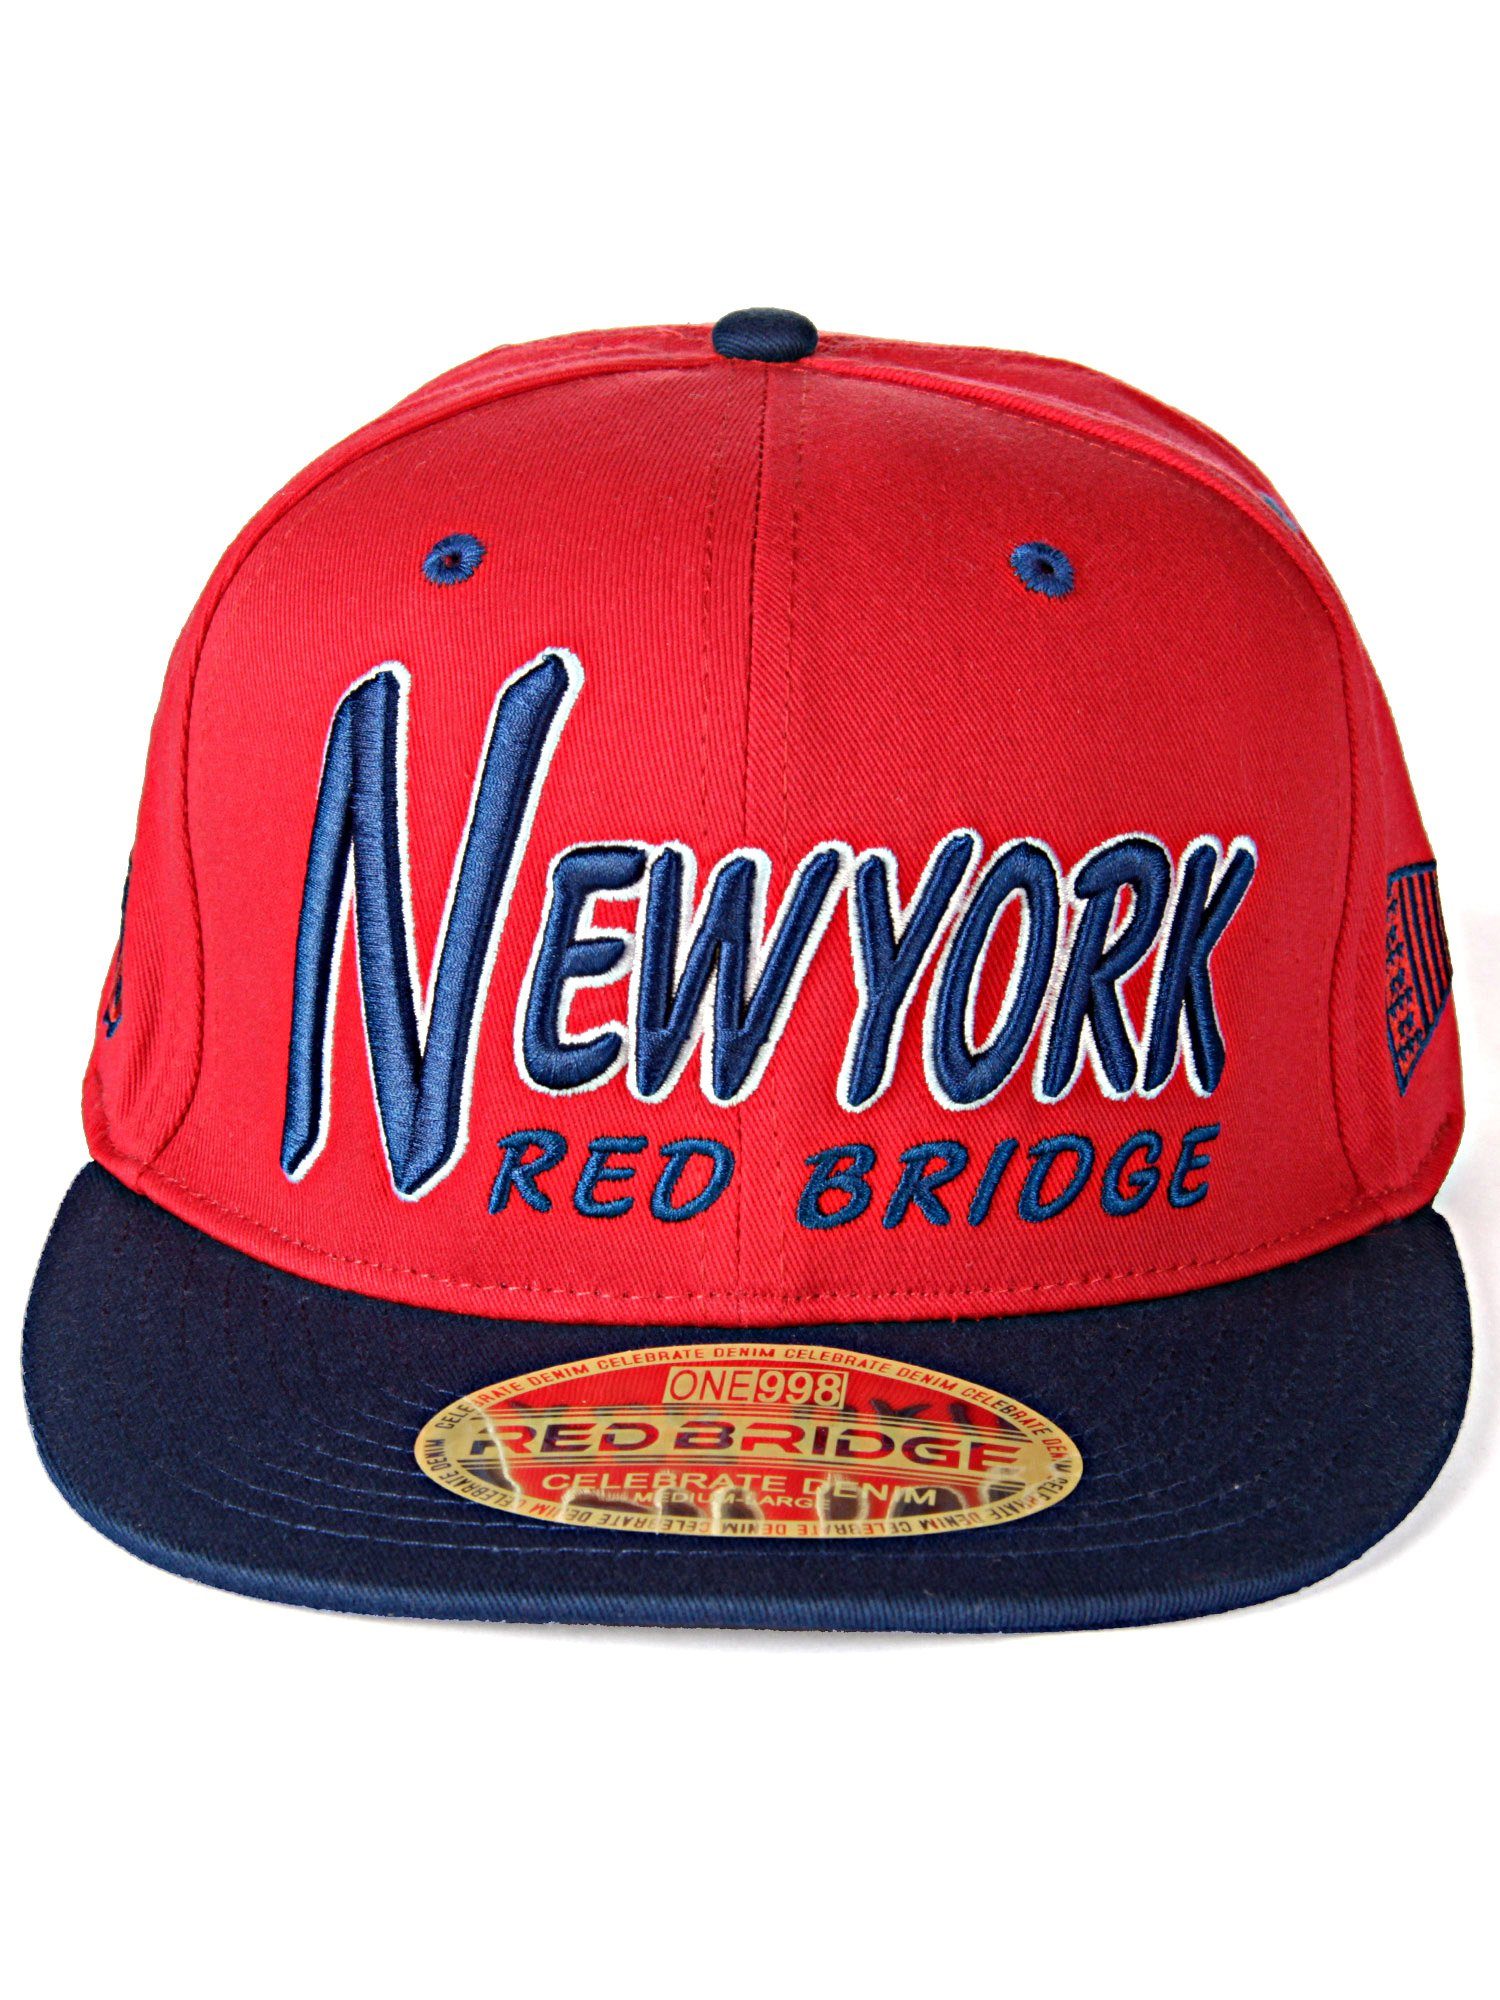 RedBridge Baseball Cap Bootle mit kontrastfarbigem Schirm dunkelblau-rot | Baseball Caps